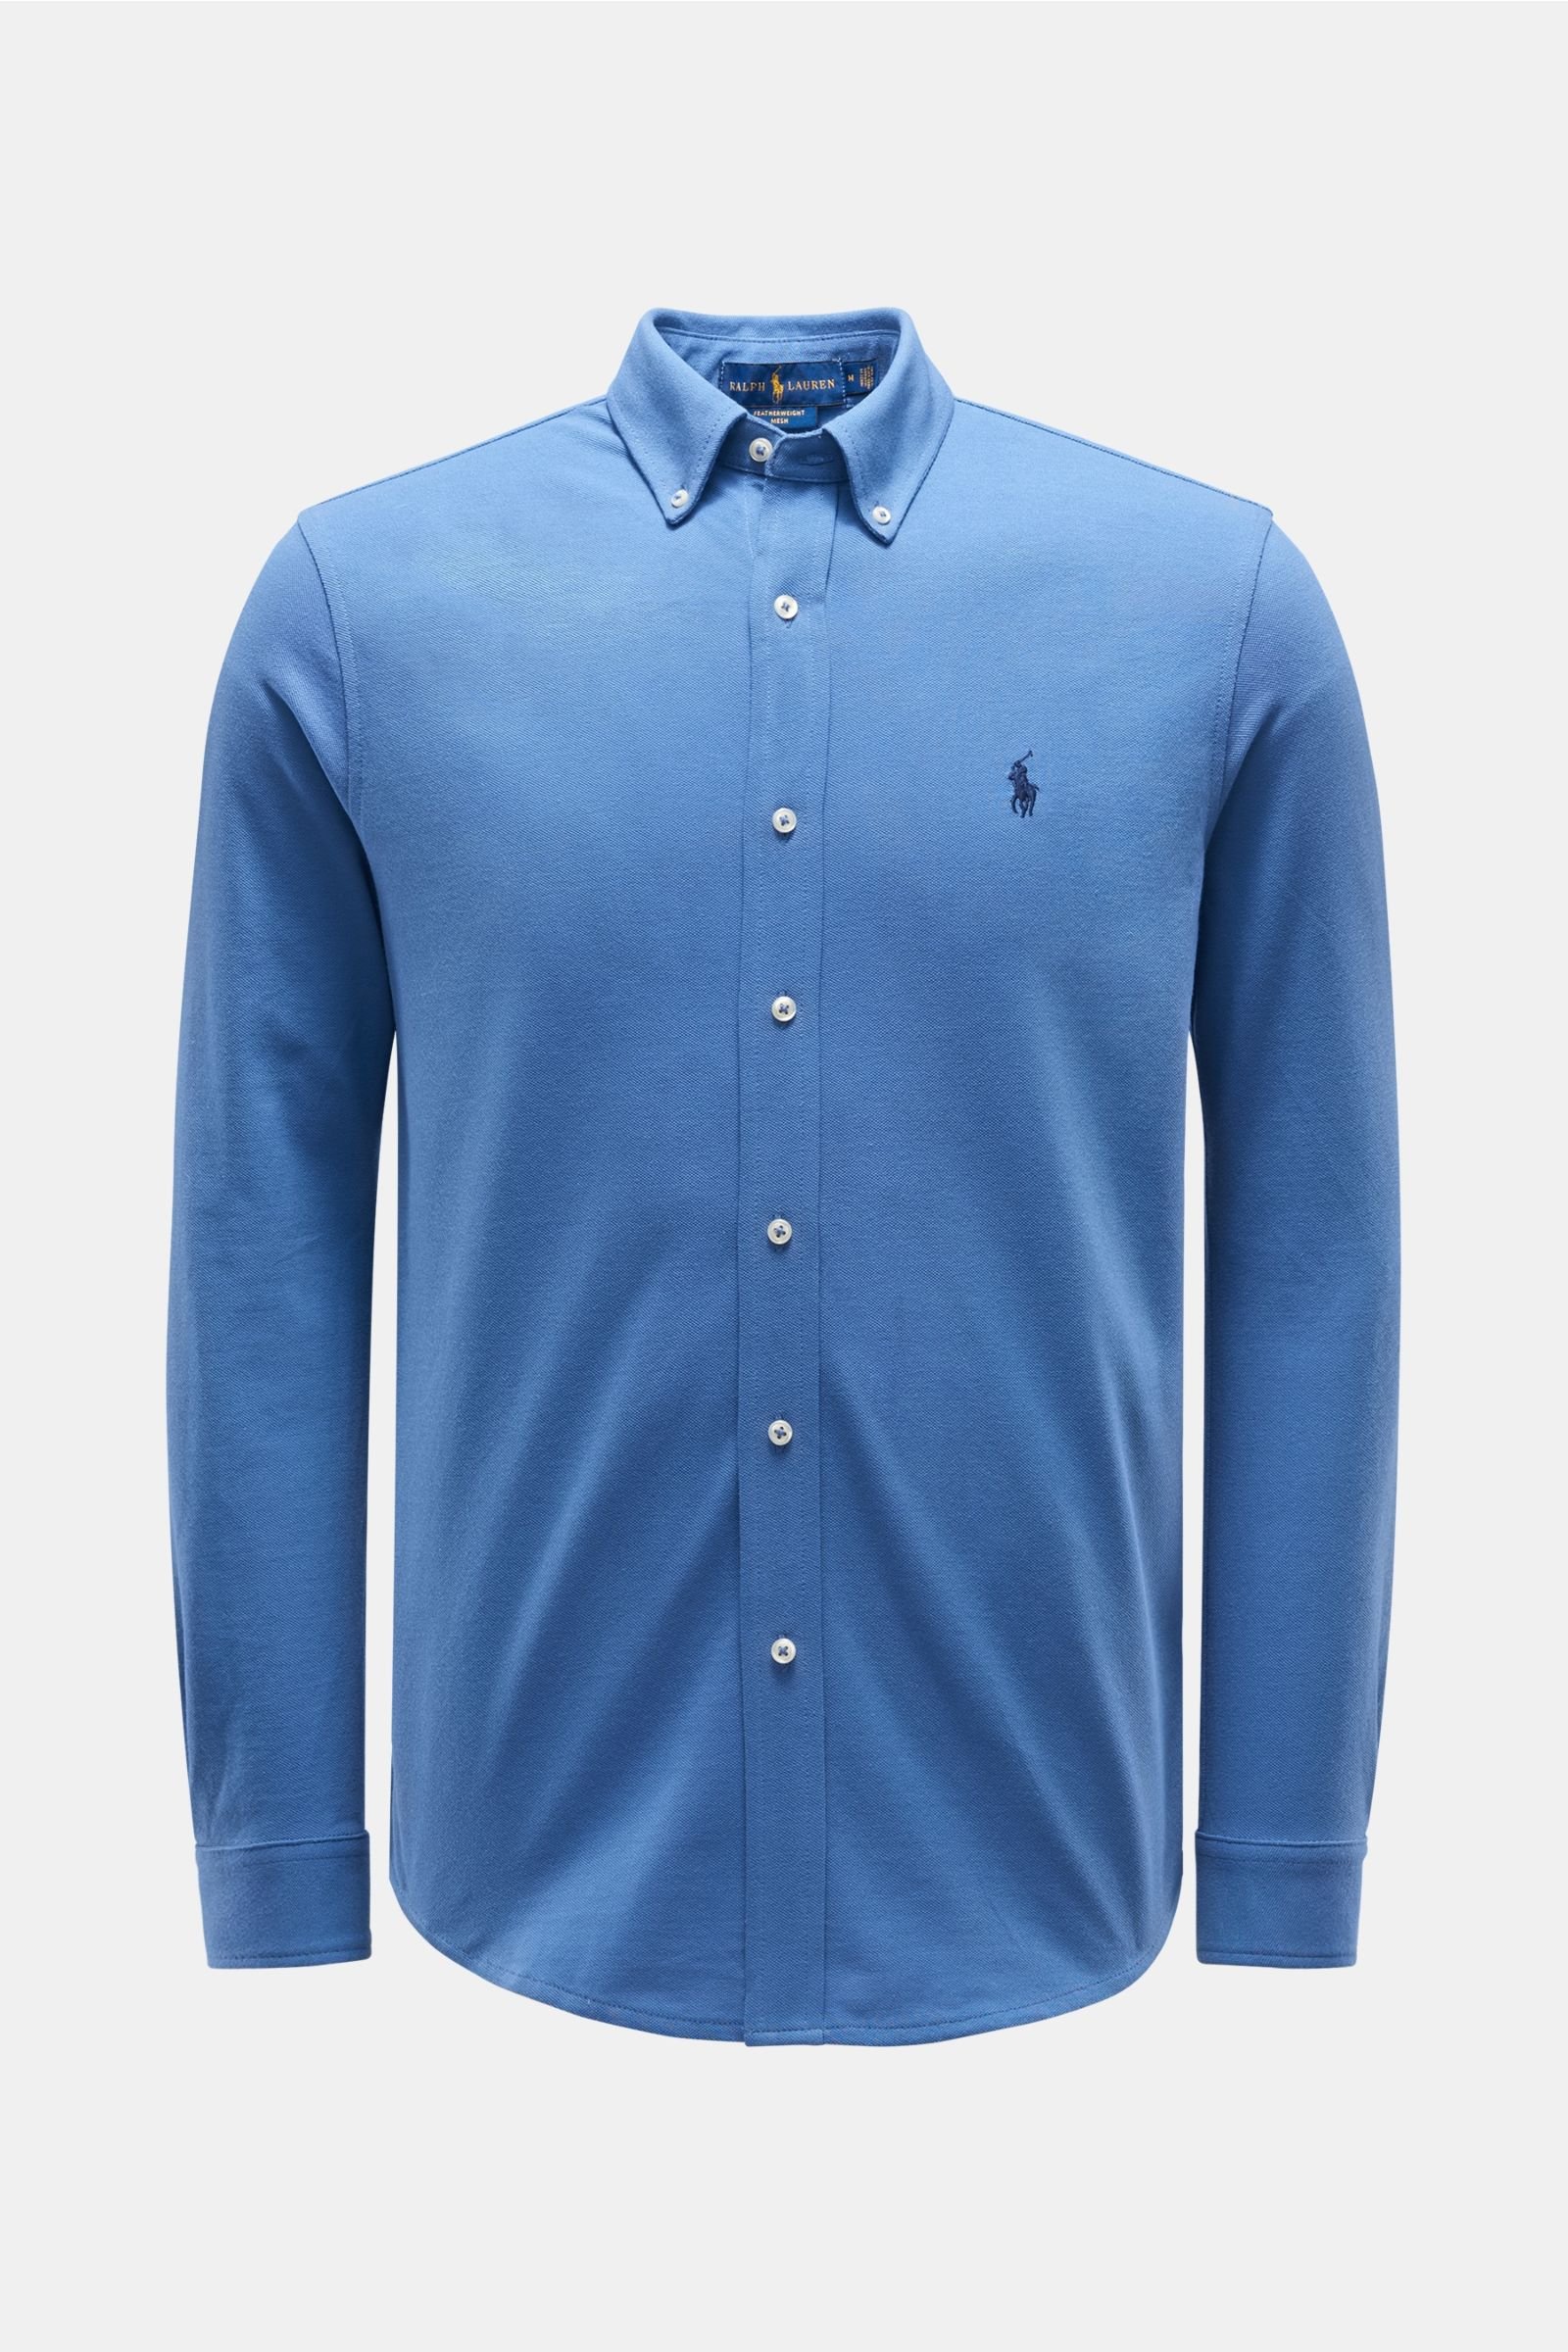 Jersey-Hemd Button-Down-Kragen graublau